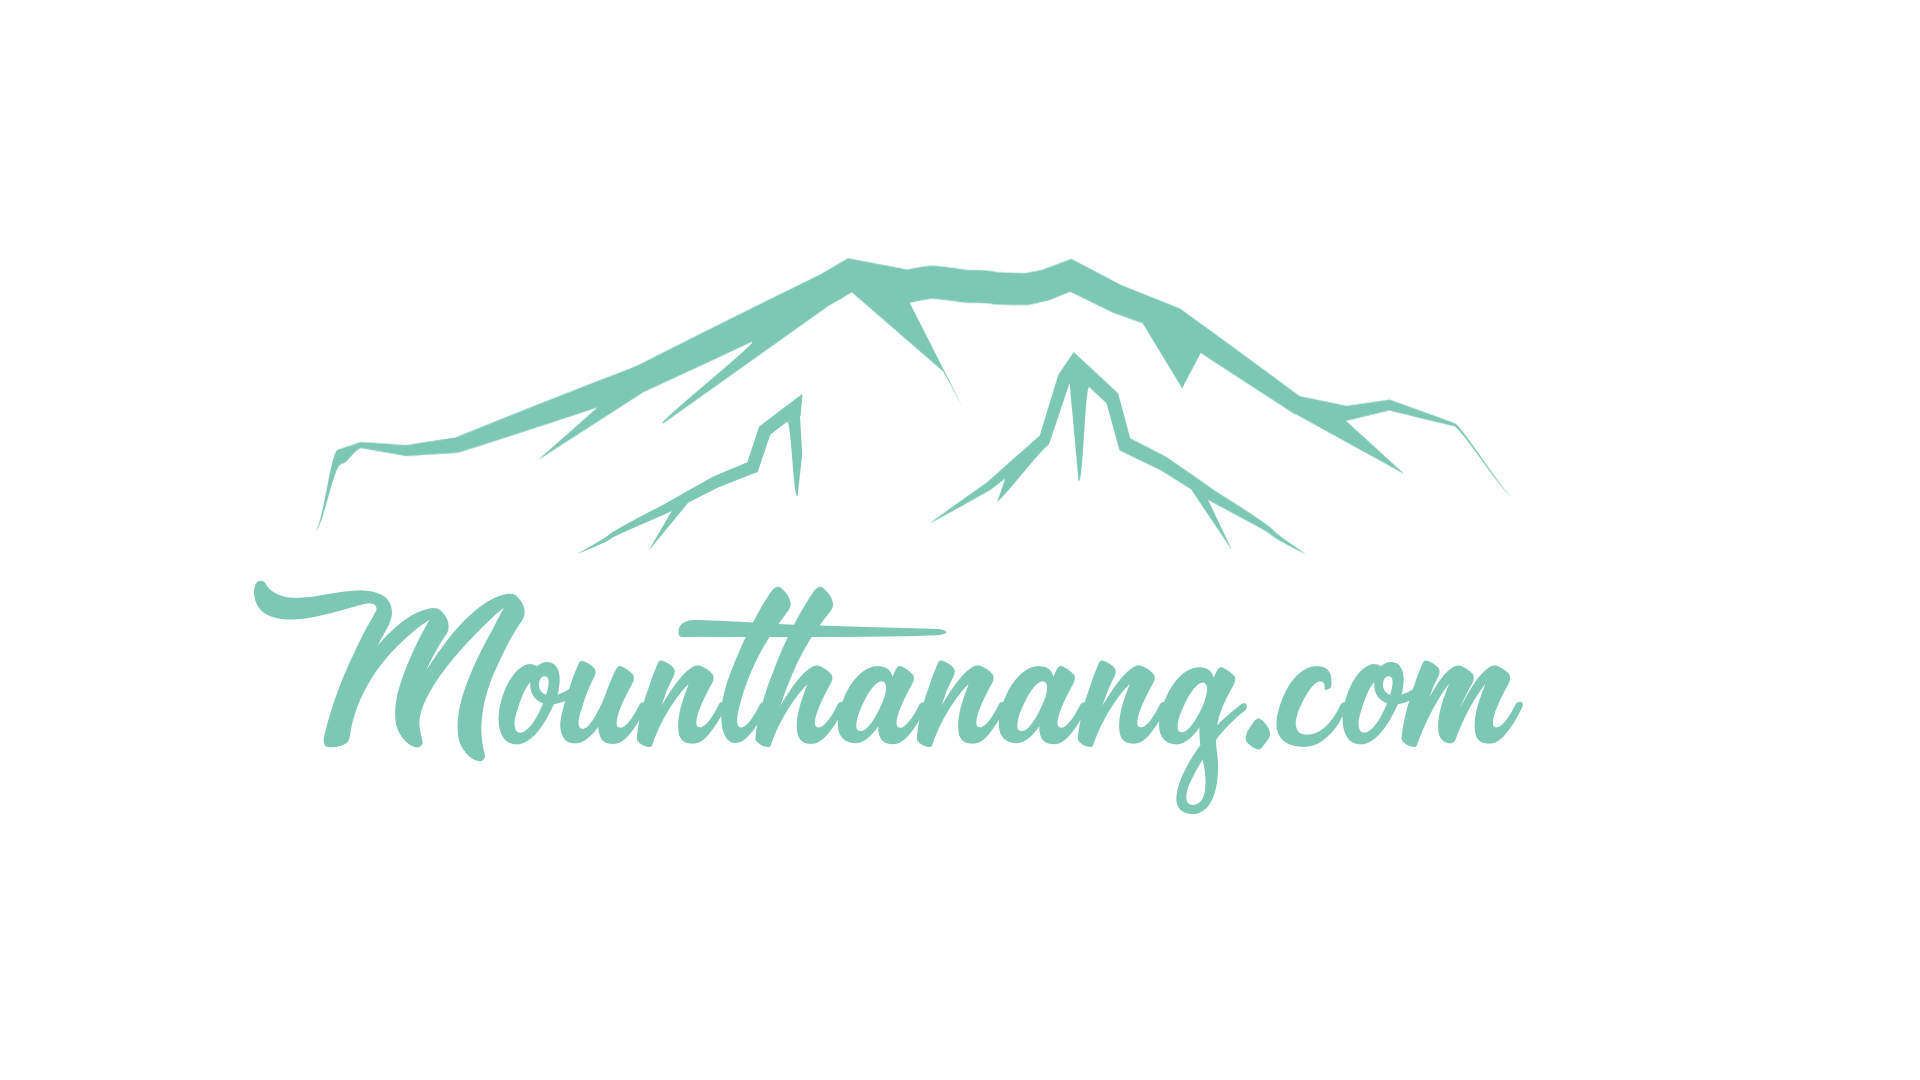 Mount Hanang